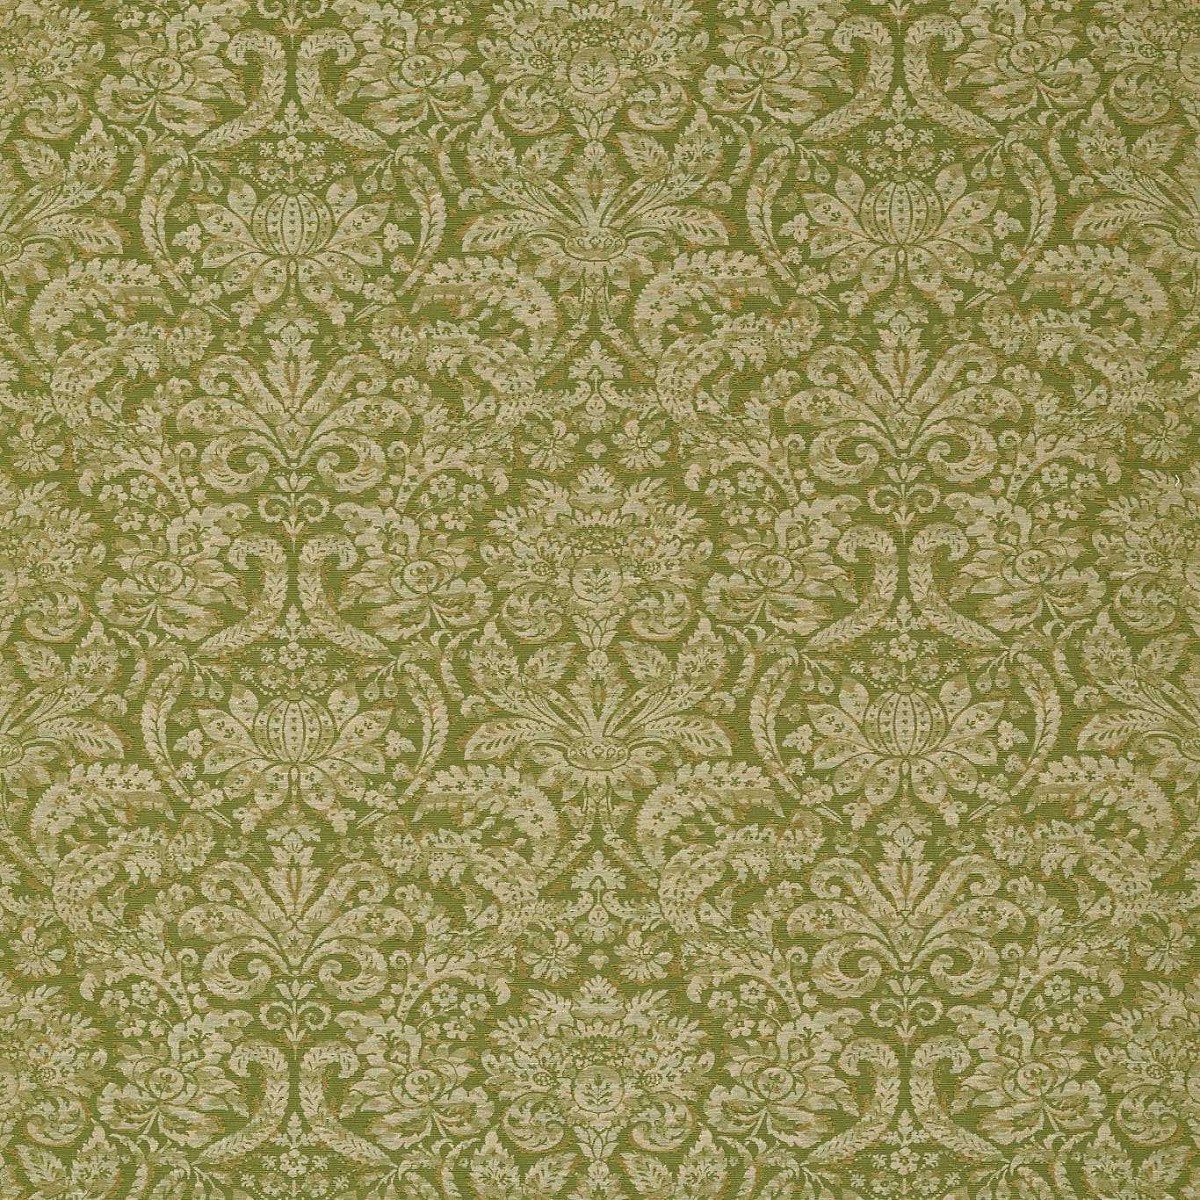 Knole Damask Evergreen Fabric by Zoffany